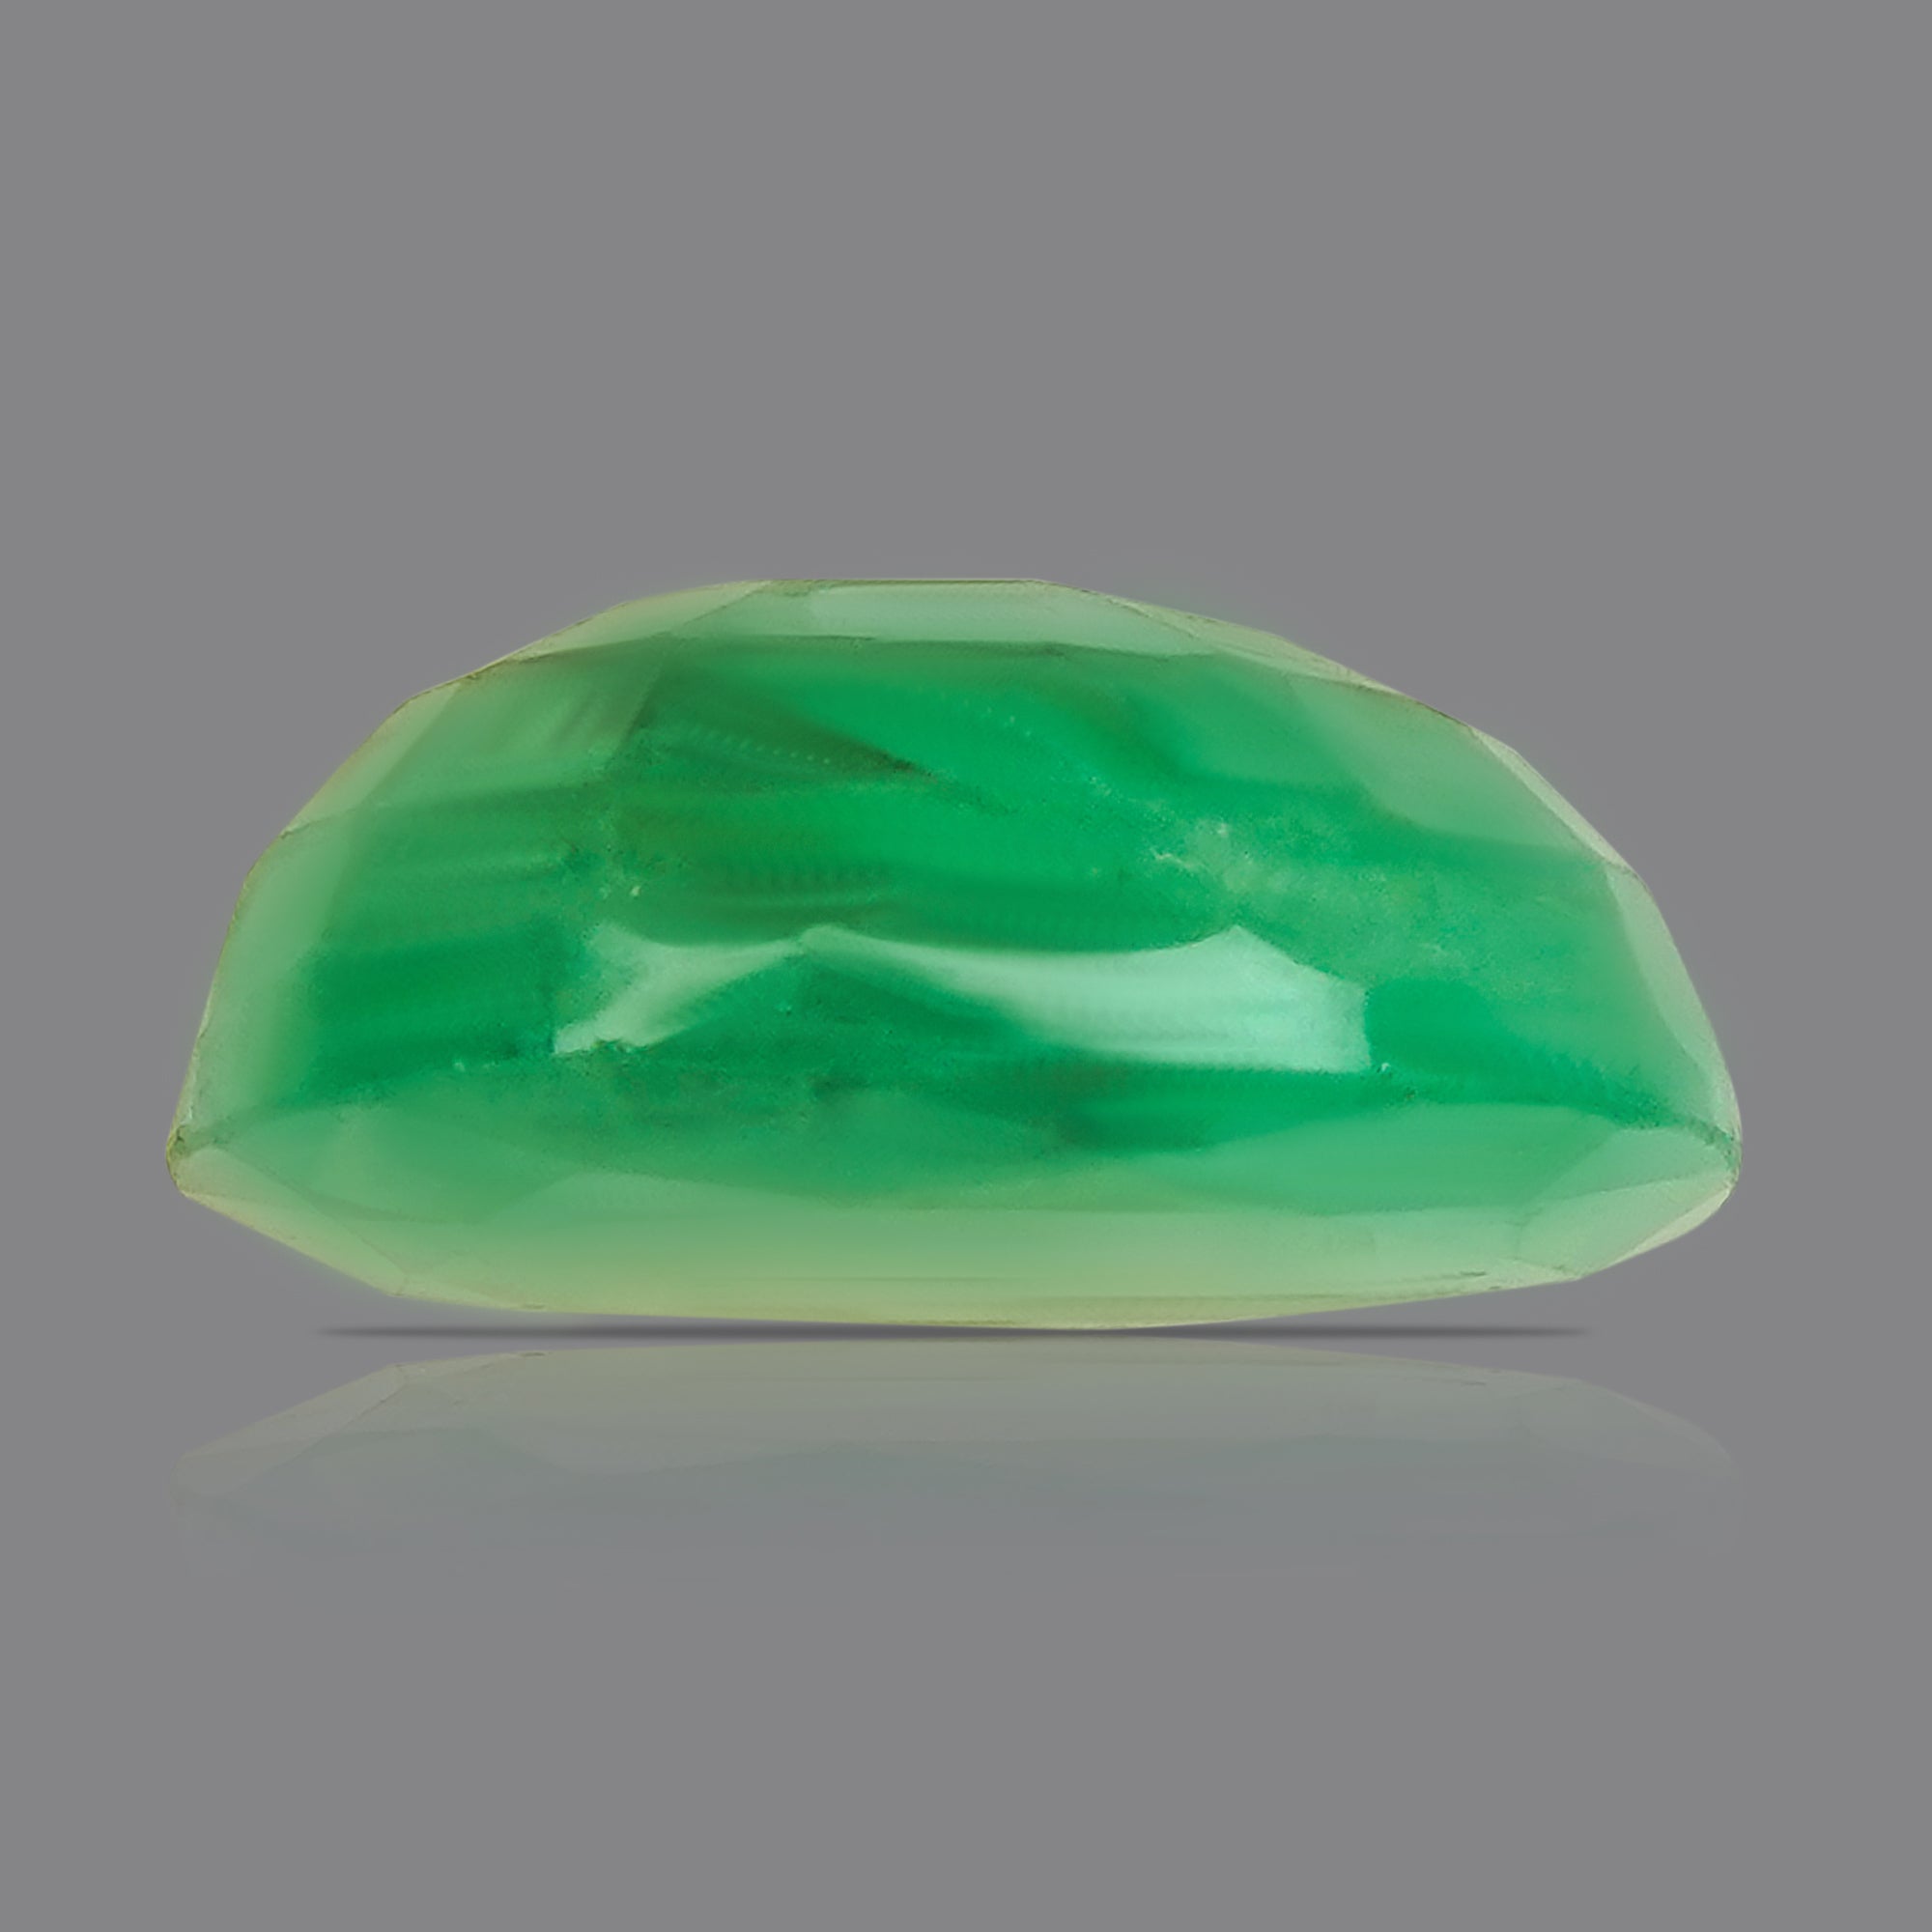 Panna (Emerald) Luxury - (6.56 Ratti)